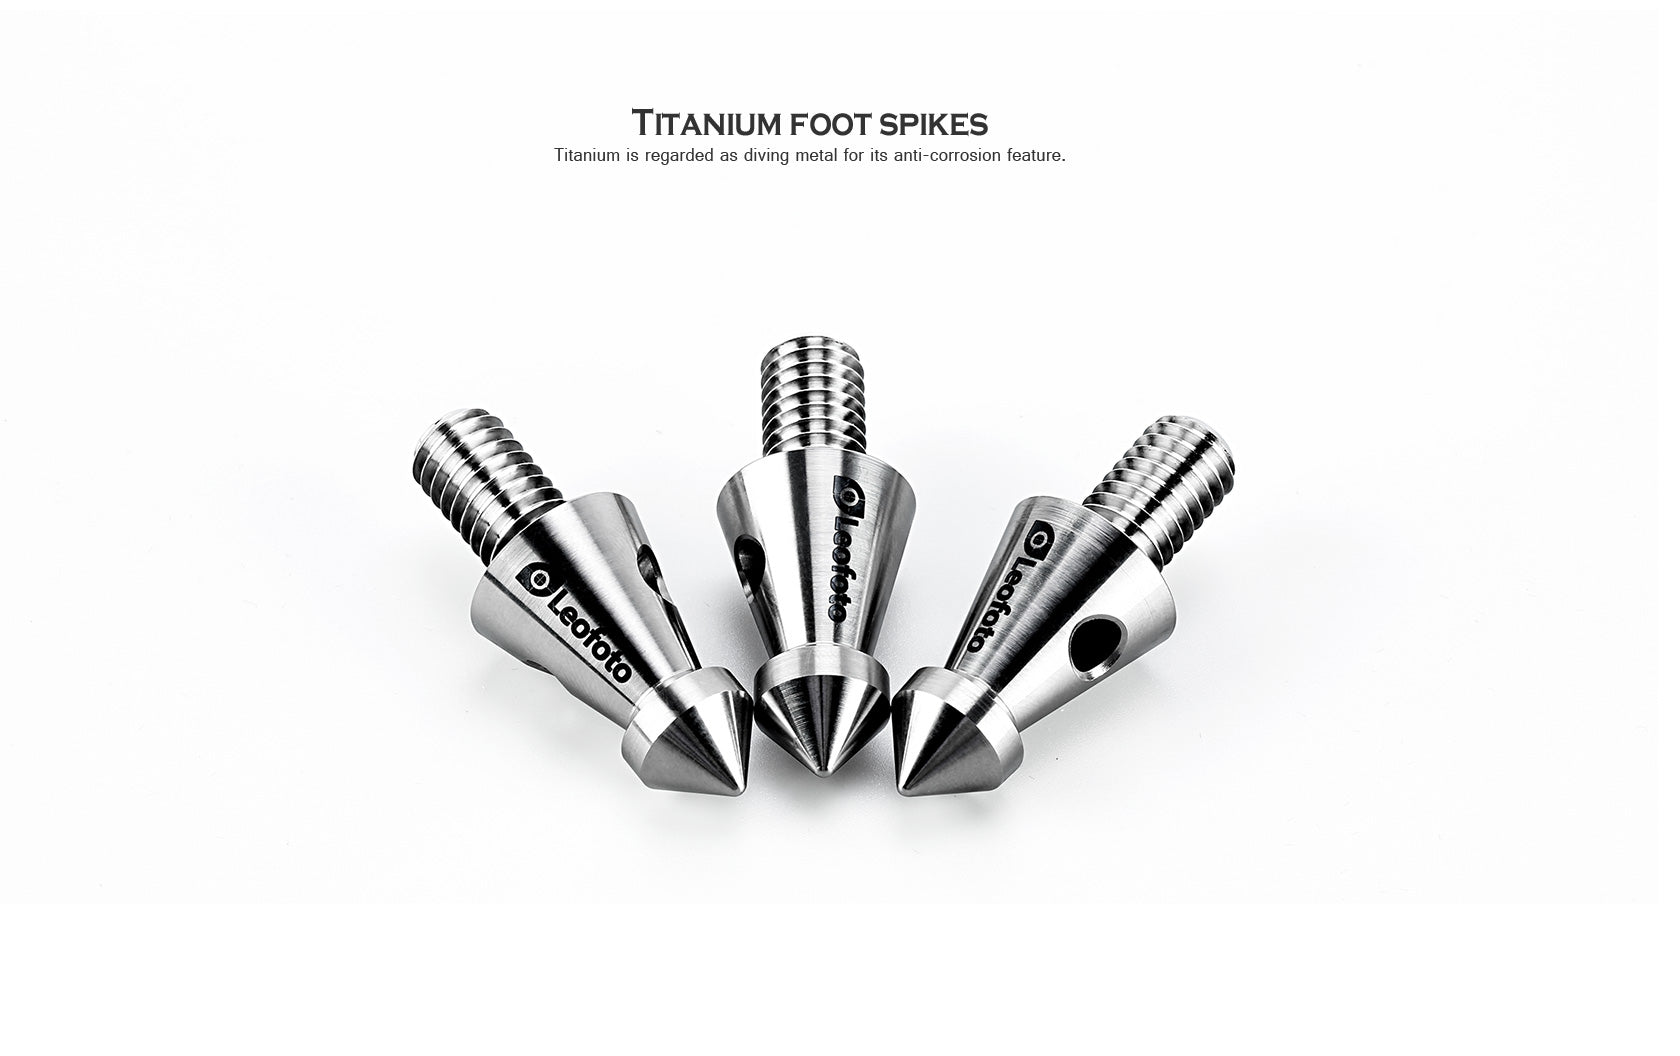 Leofoto TF-01 / TF-02 Set of 3 Titanium Foot Spikes / Rock Claw | 3/8"